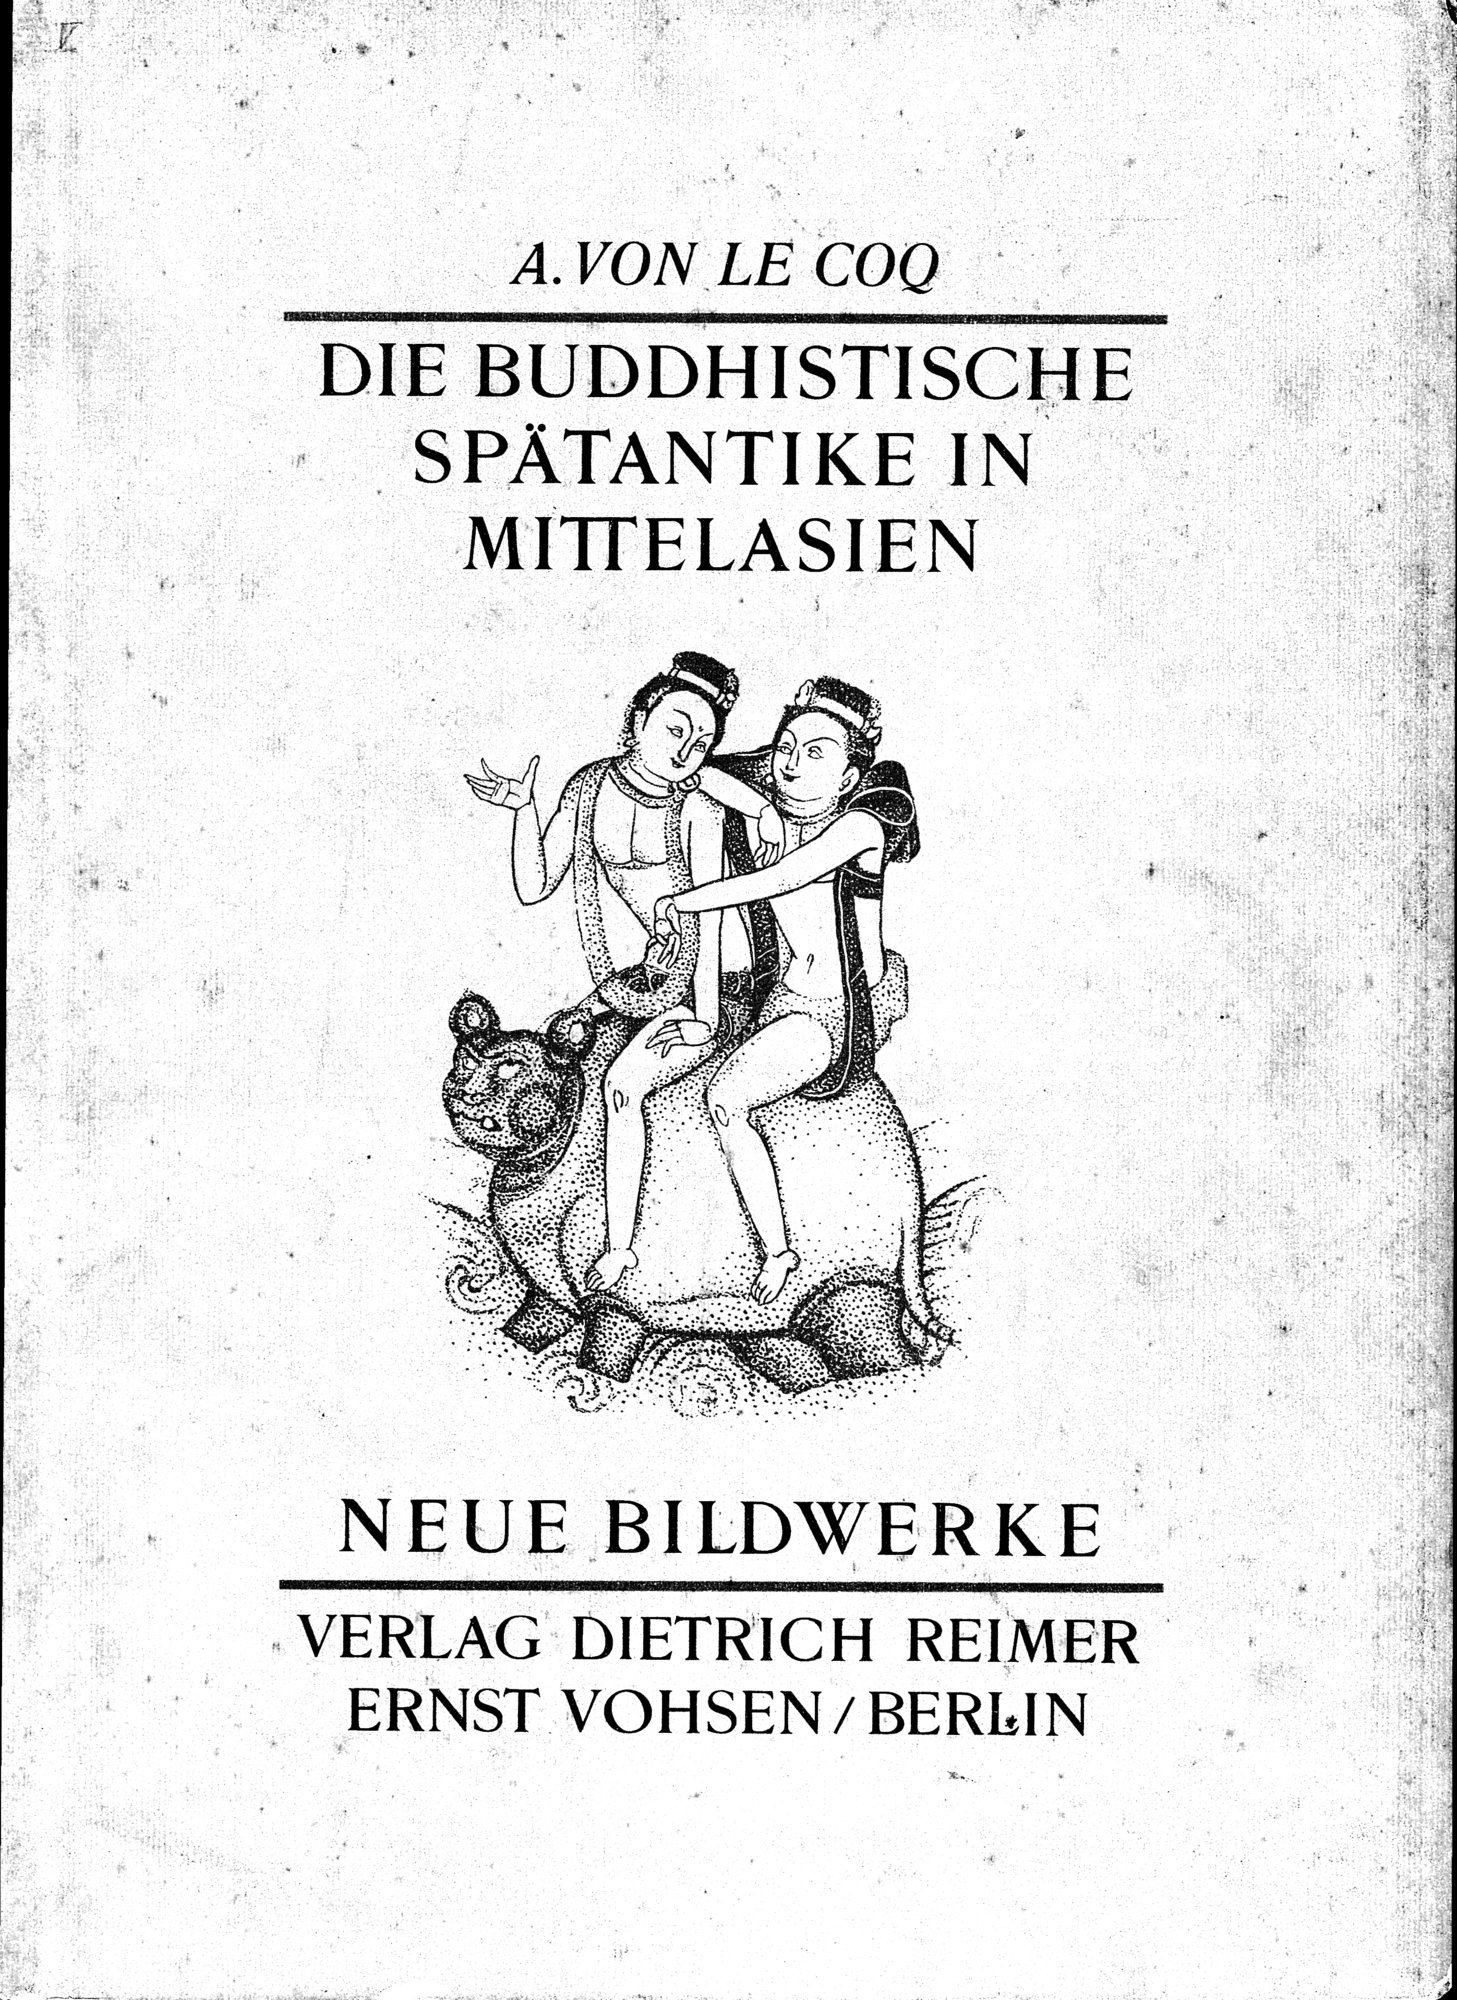 Die Buddhistische Spätantike in Mittelasien : vol.5 / Page 1 (Grayscale High Resolution Image)